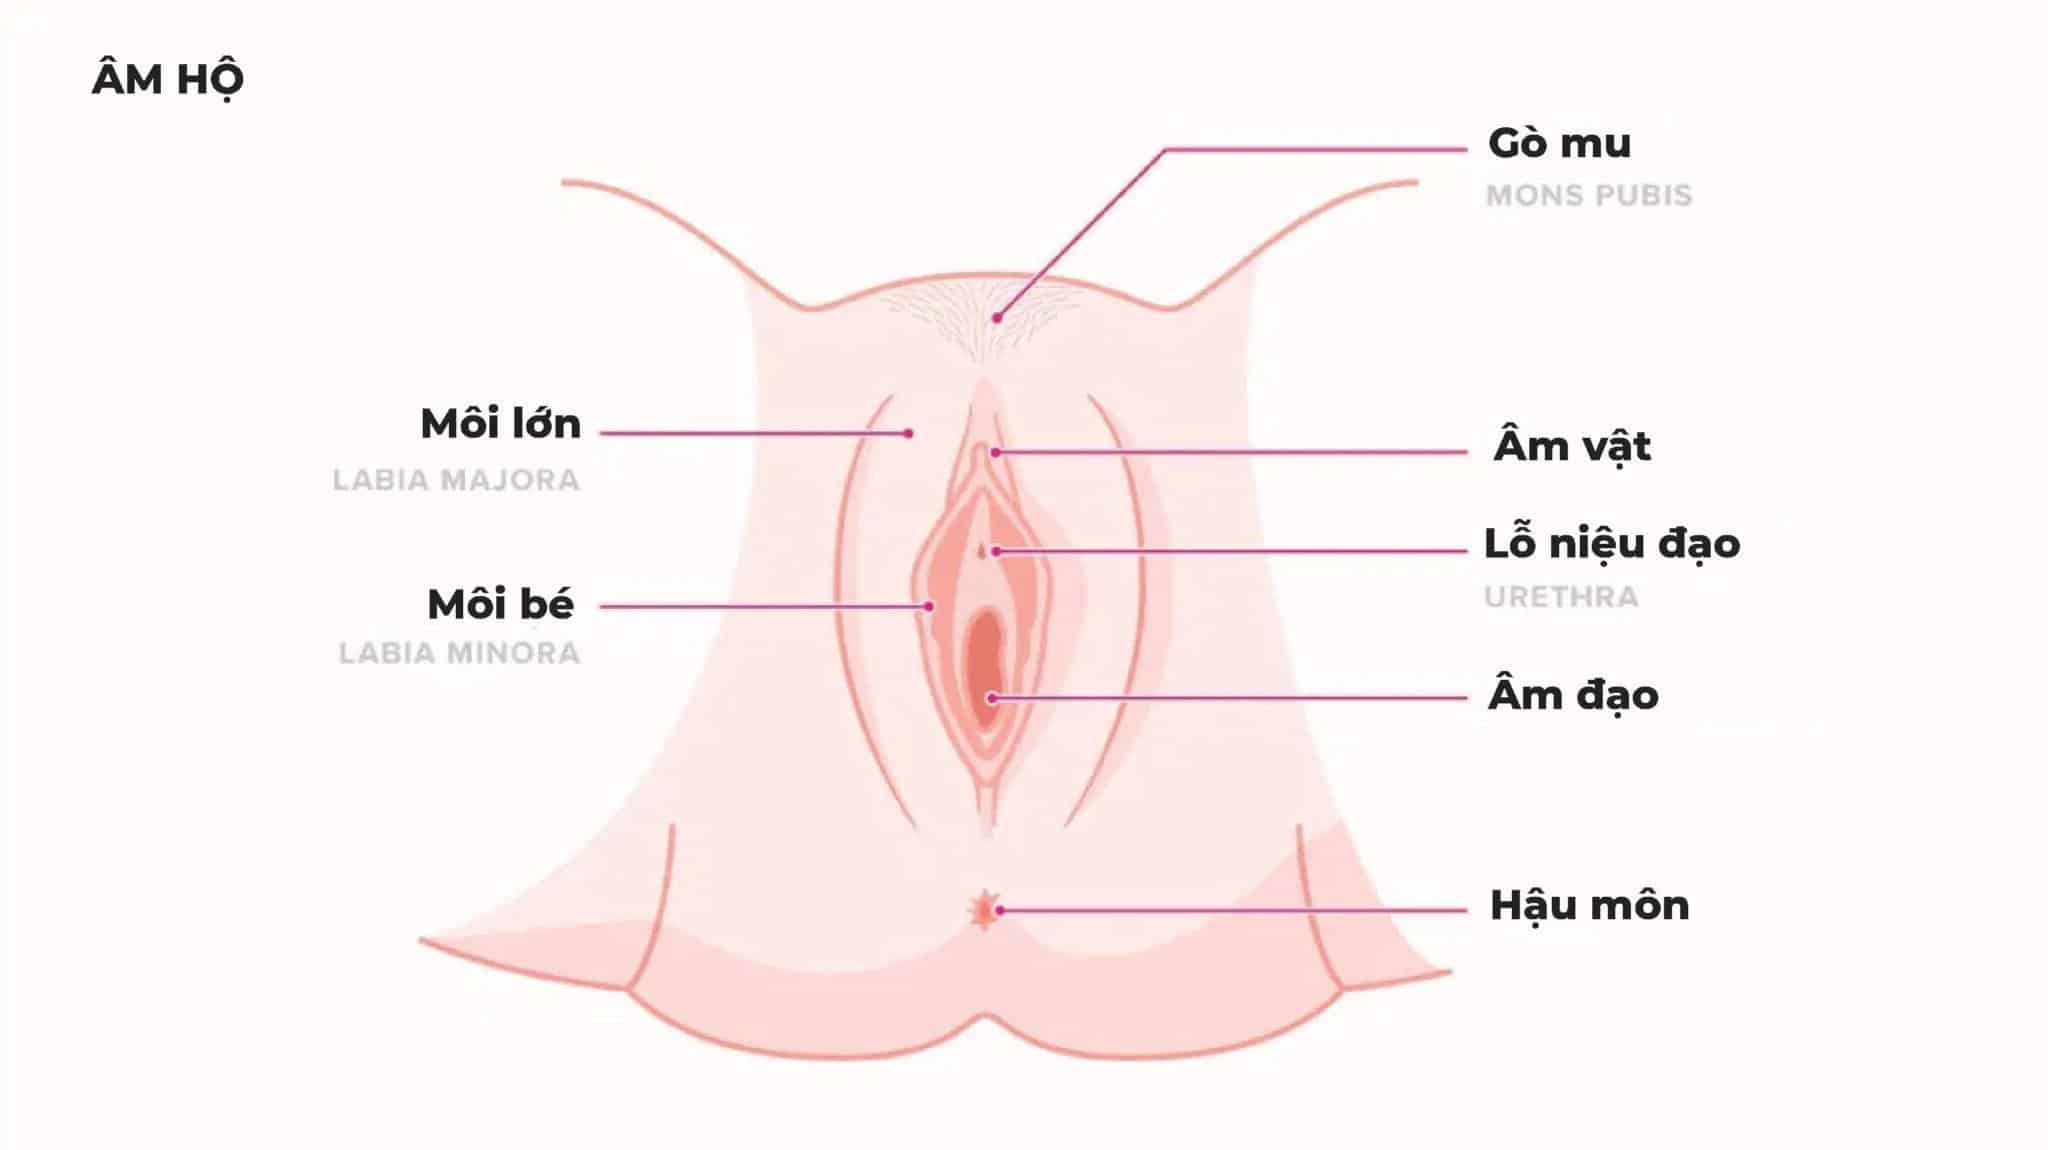 Cấu tạo cơ quan sinh dục nữ gồm bộ phận nào Có chức năng gì